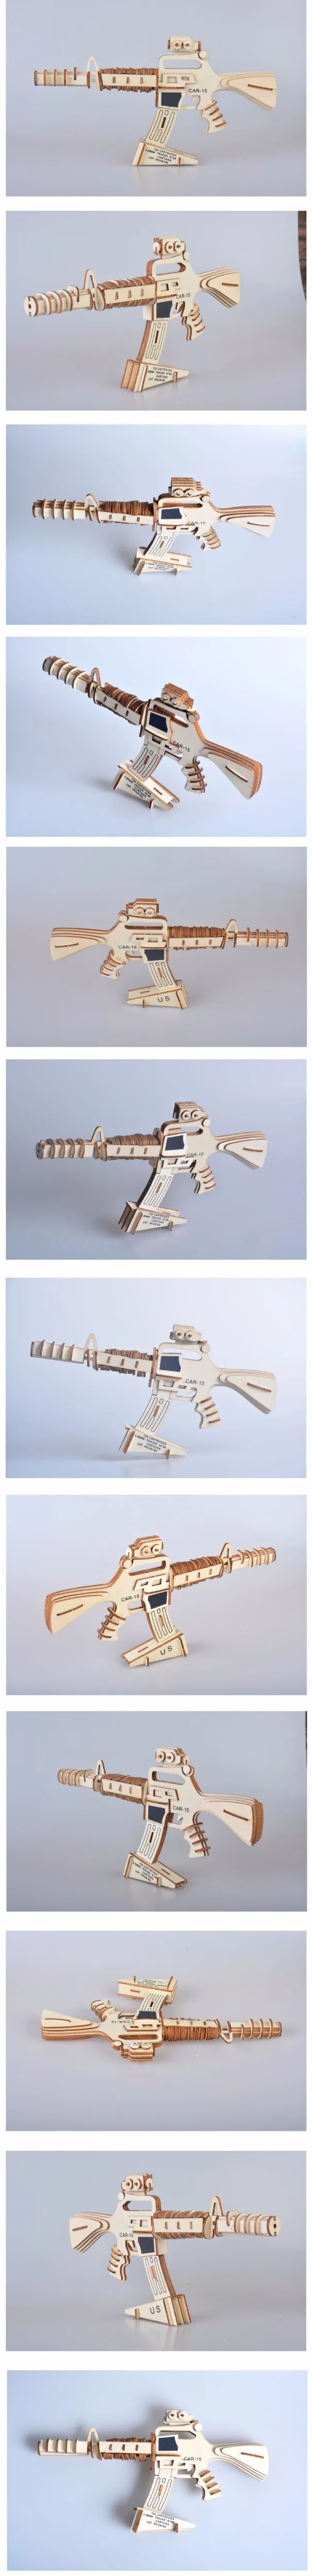 Новинка 1 шт. лазерная резка DIY 3D деревянные головоломки по дереву монтажный комплект бег пожарный пистолет с резиновой лентой для мальчиков подарок